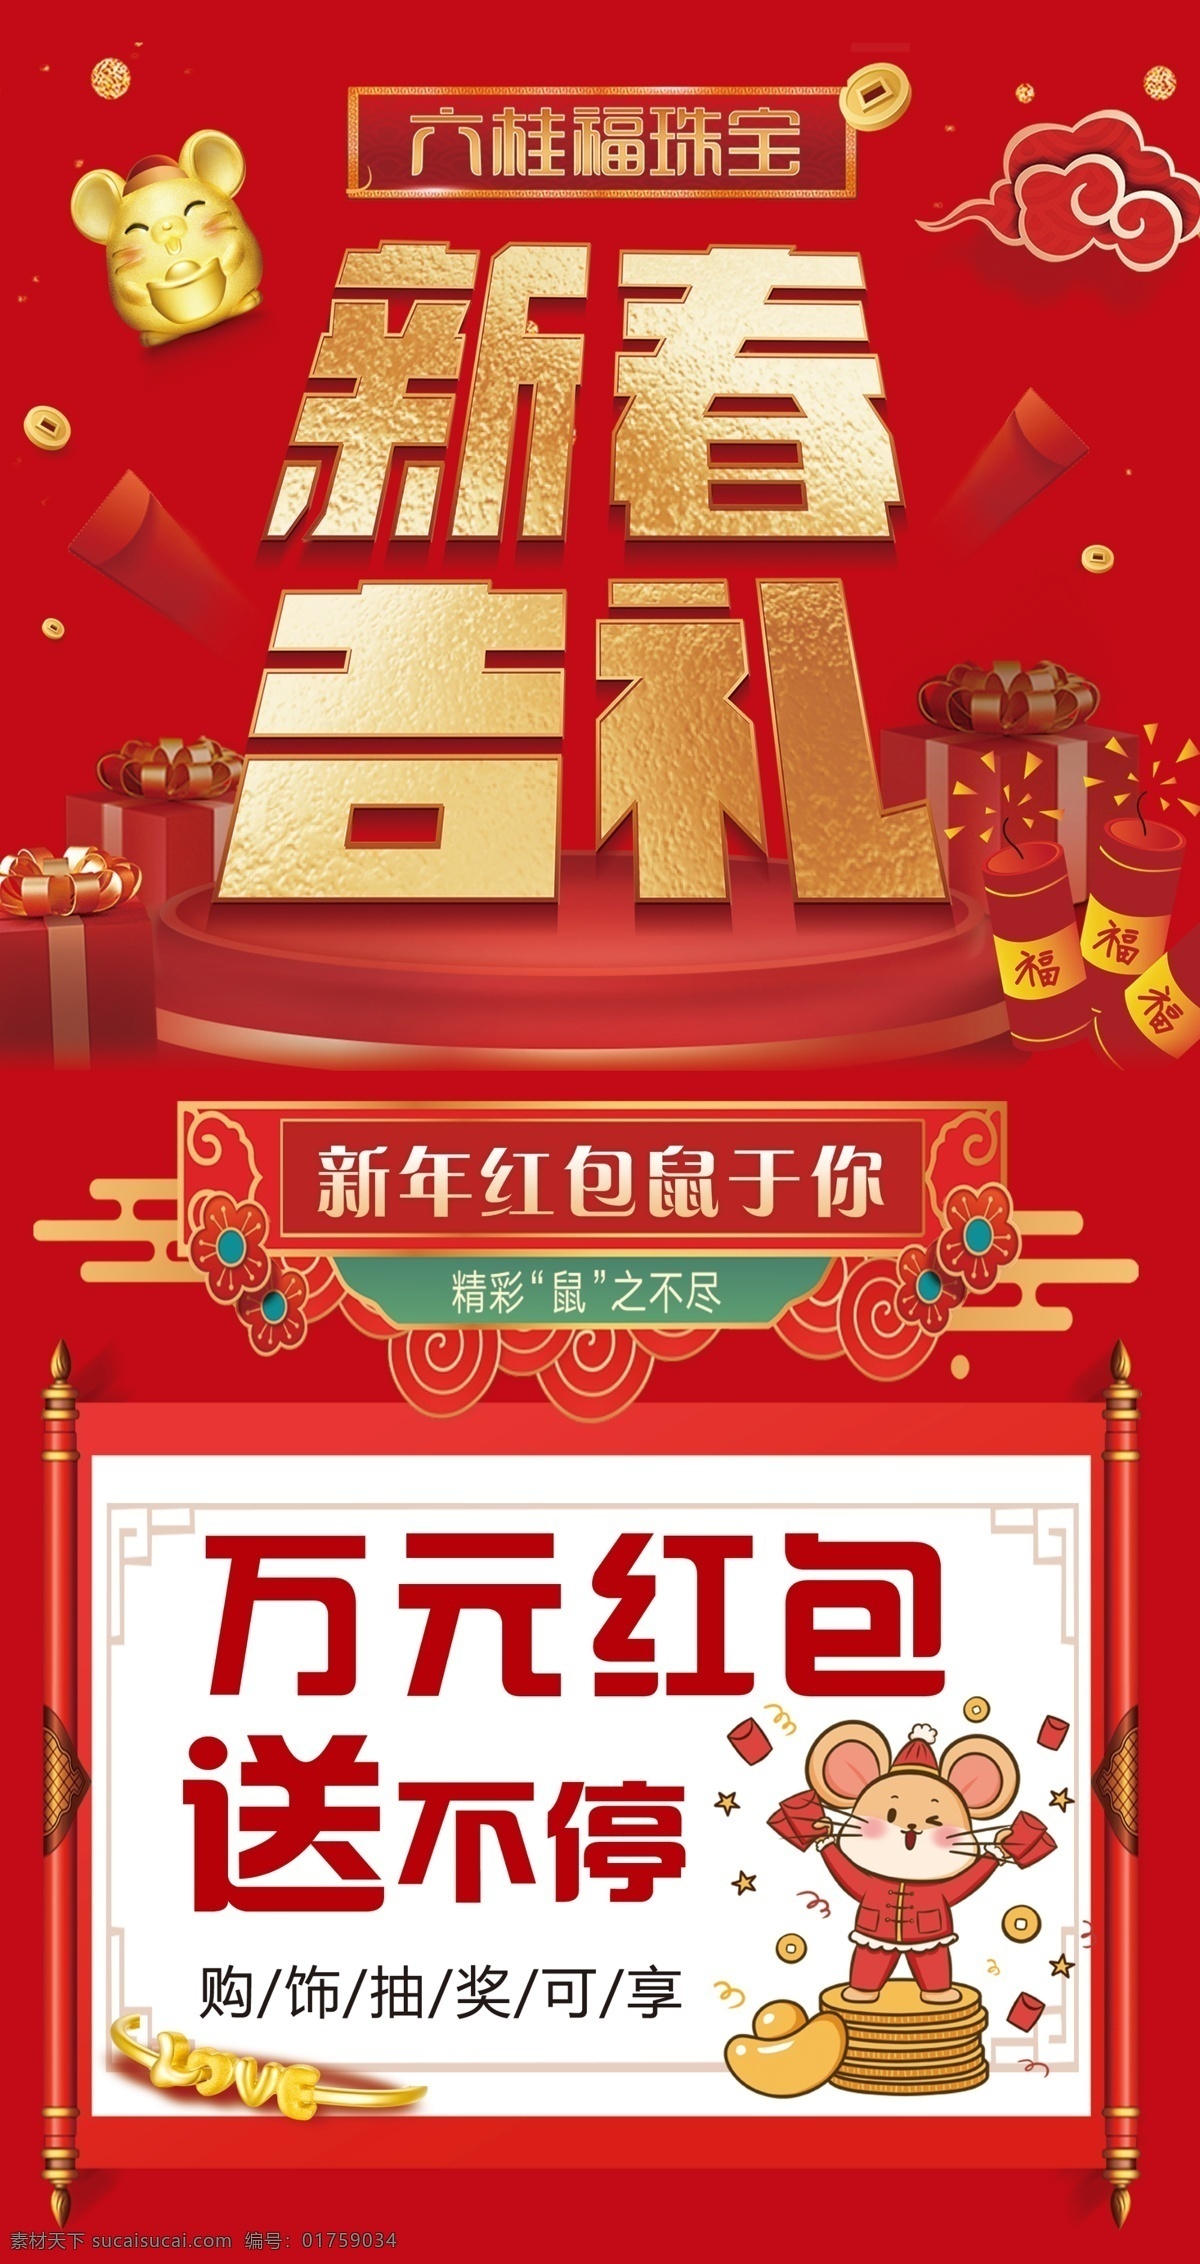 六桂福 新春吉礼 送红包 地贴 新春 吉礼 室内广告设计